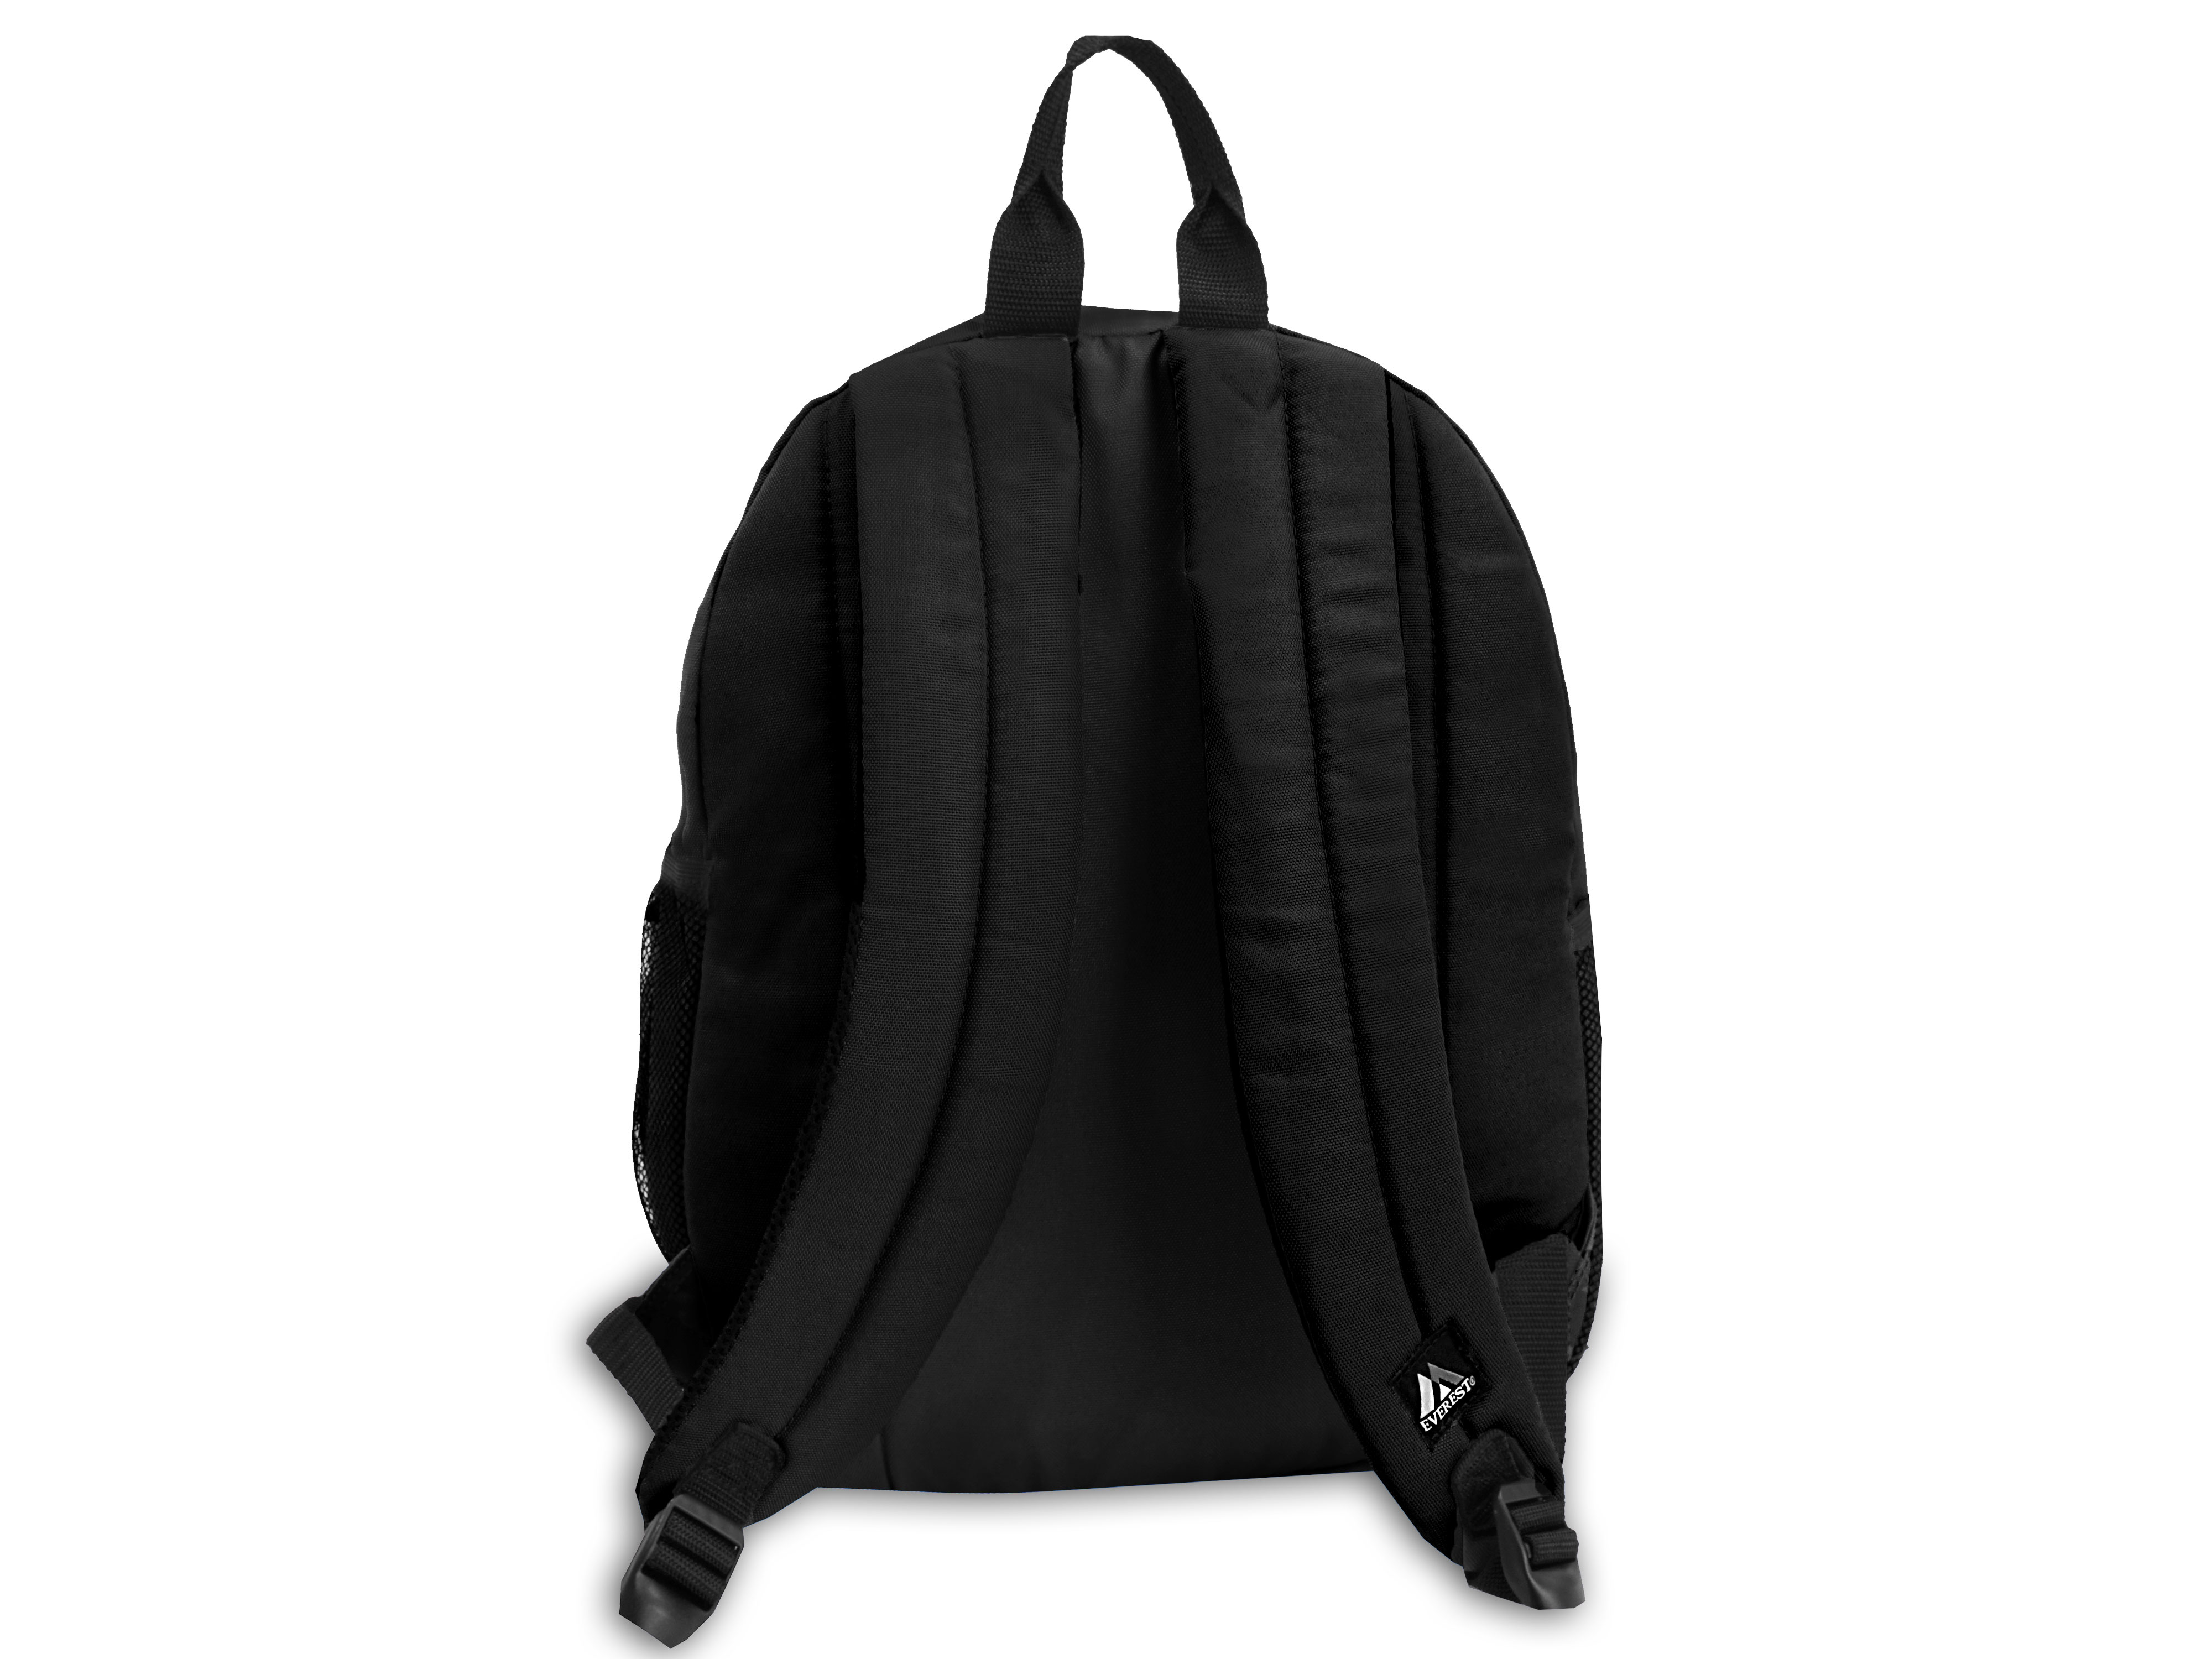 Everest Backpack, Black - image 3 of 4